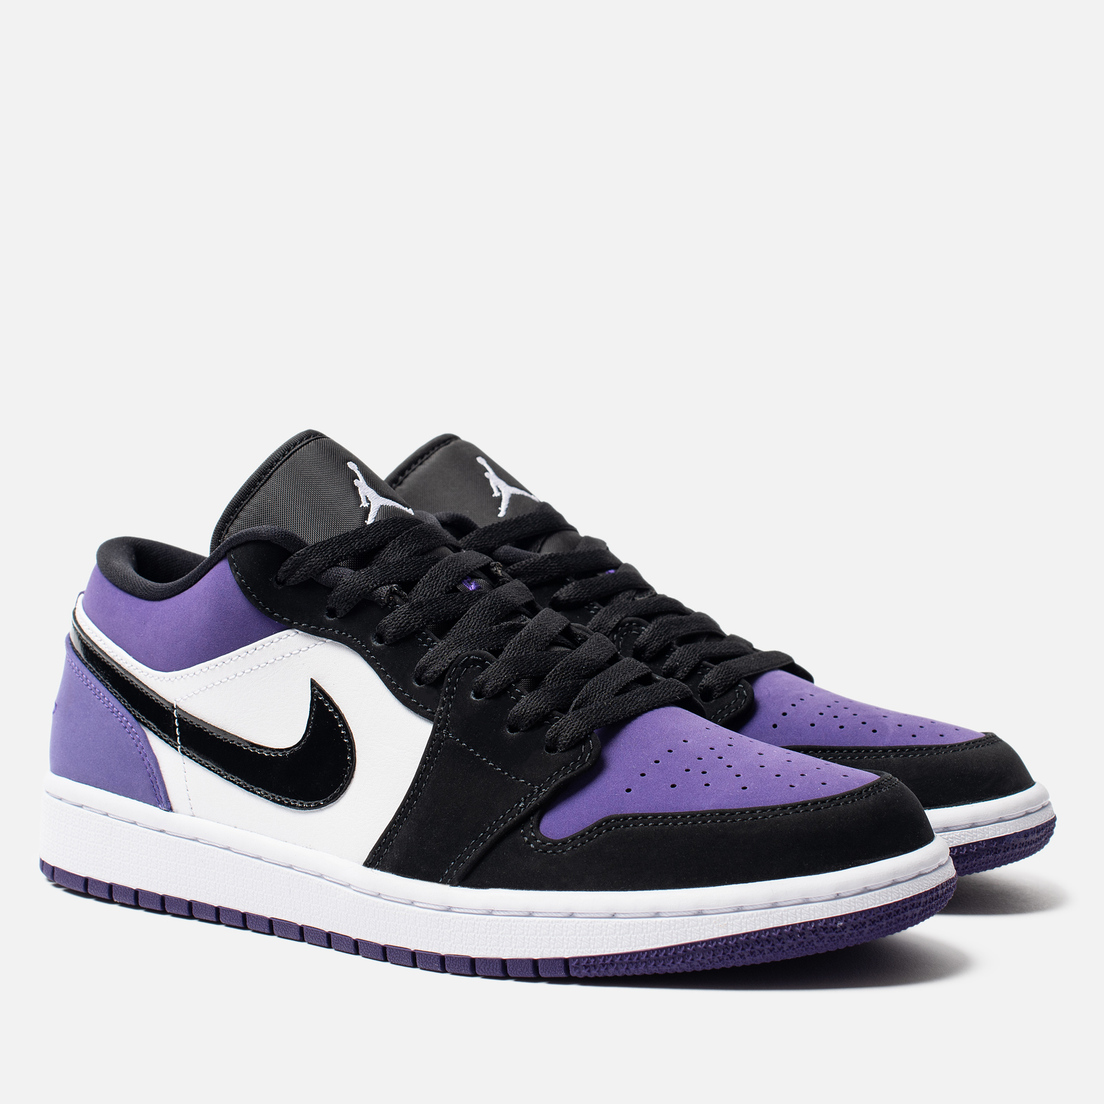 air jordan 1 court purple low